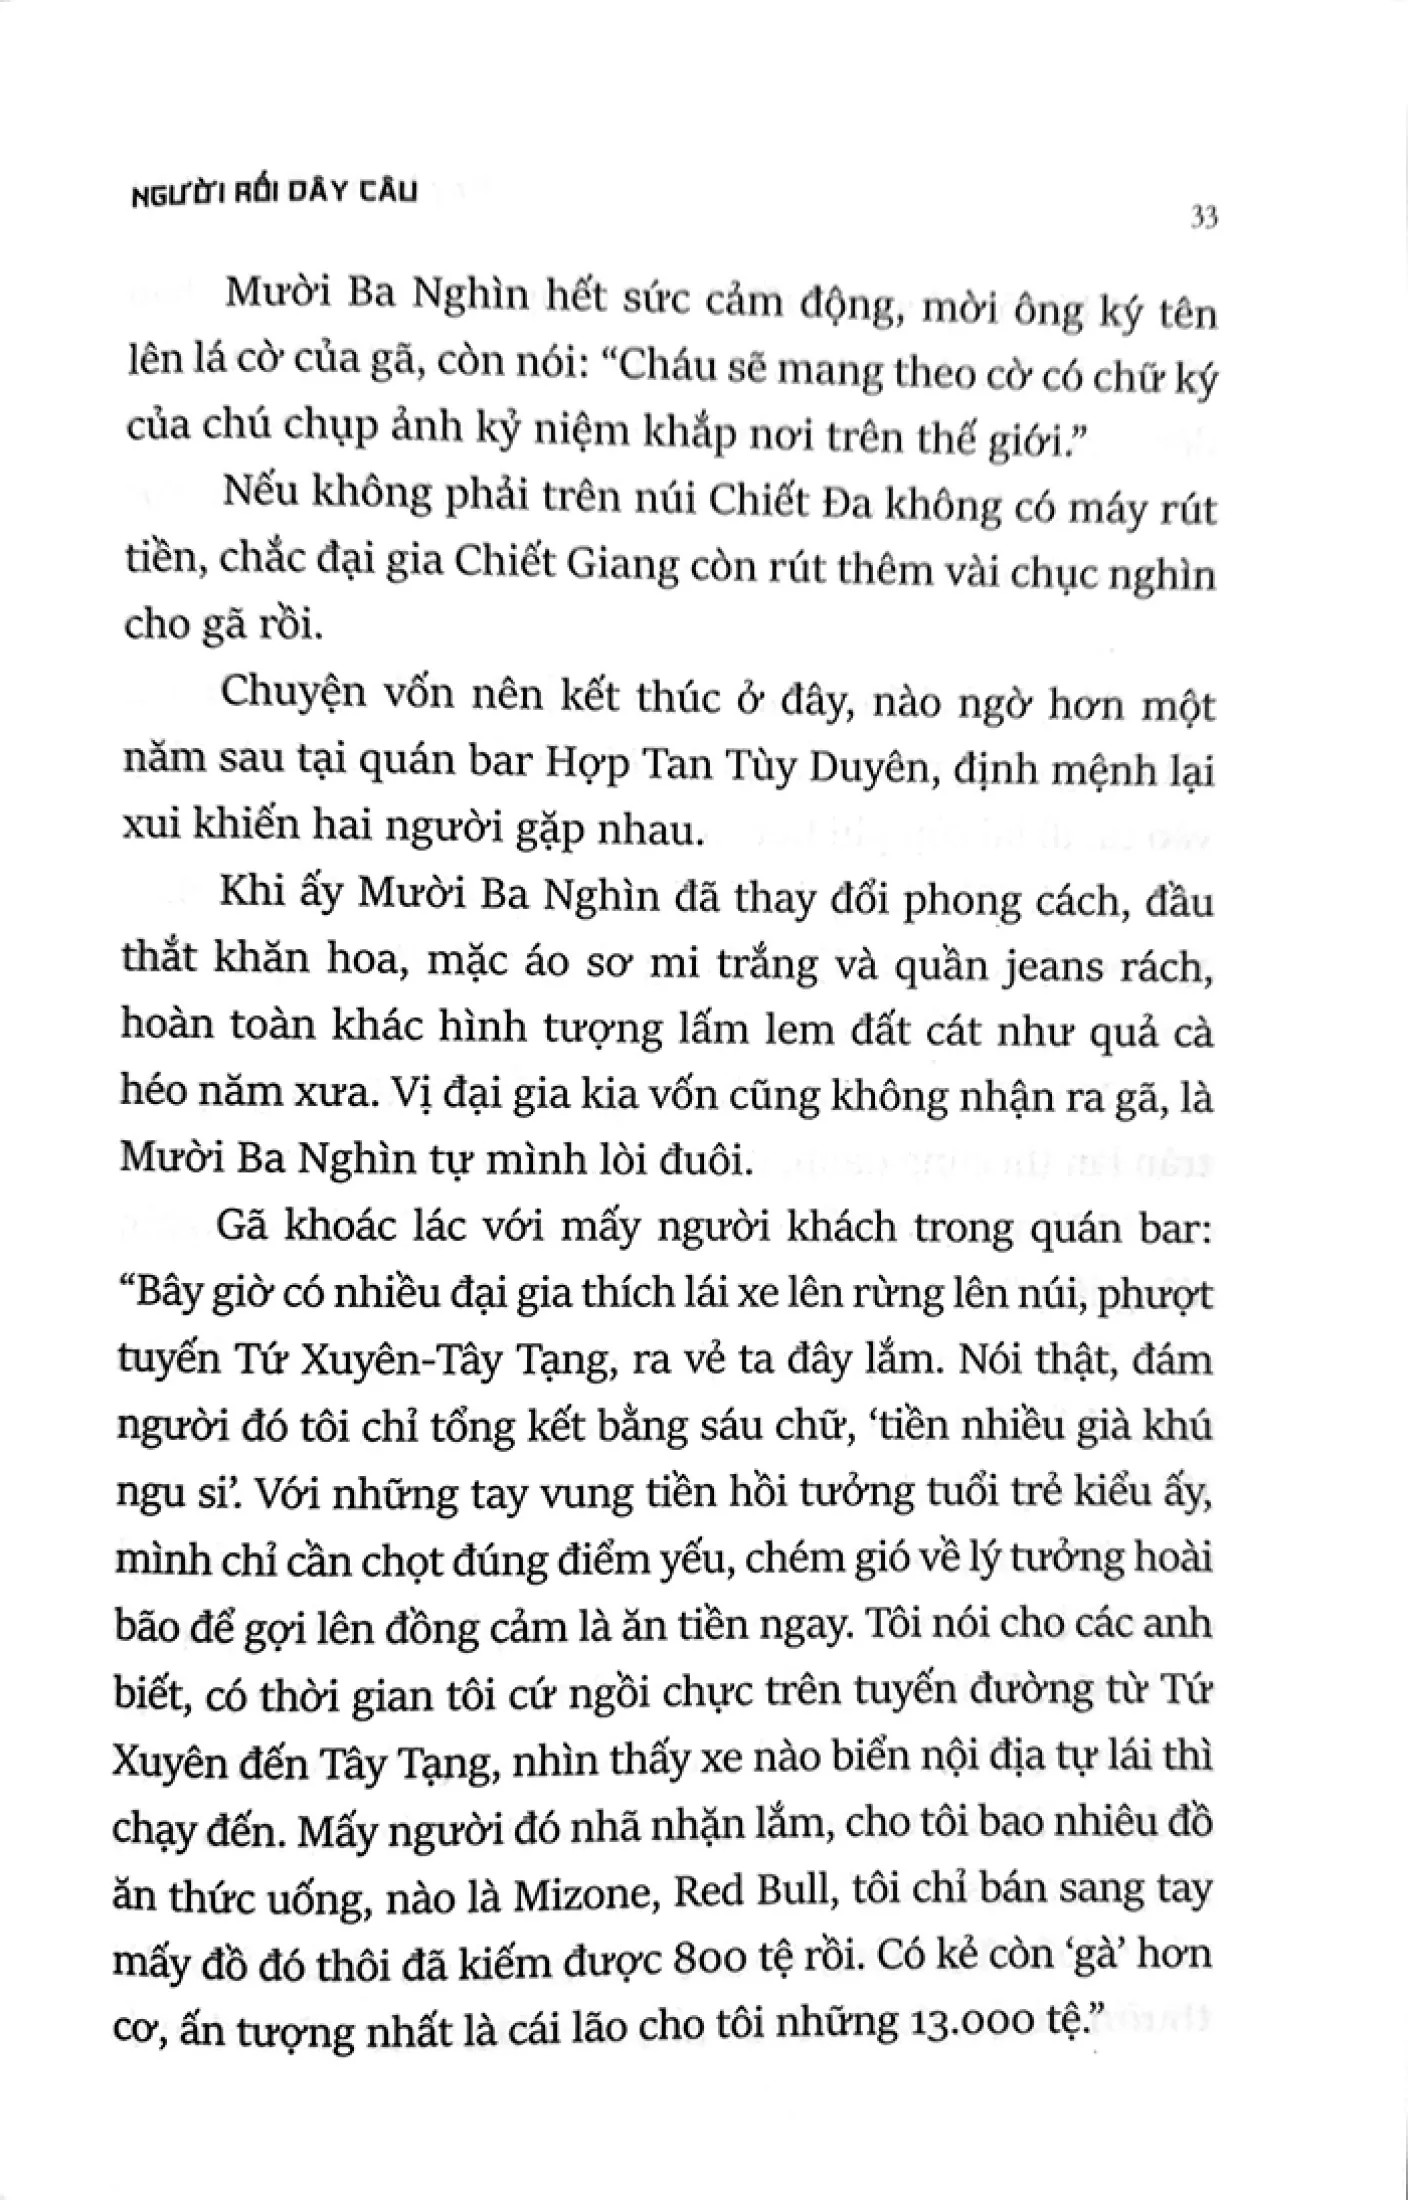 Bảy Thanh Hung Giản 1 PDF